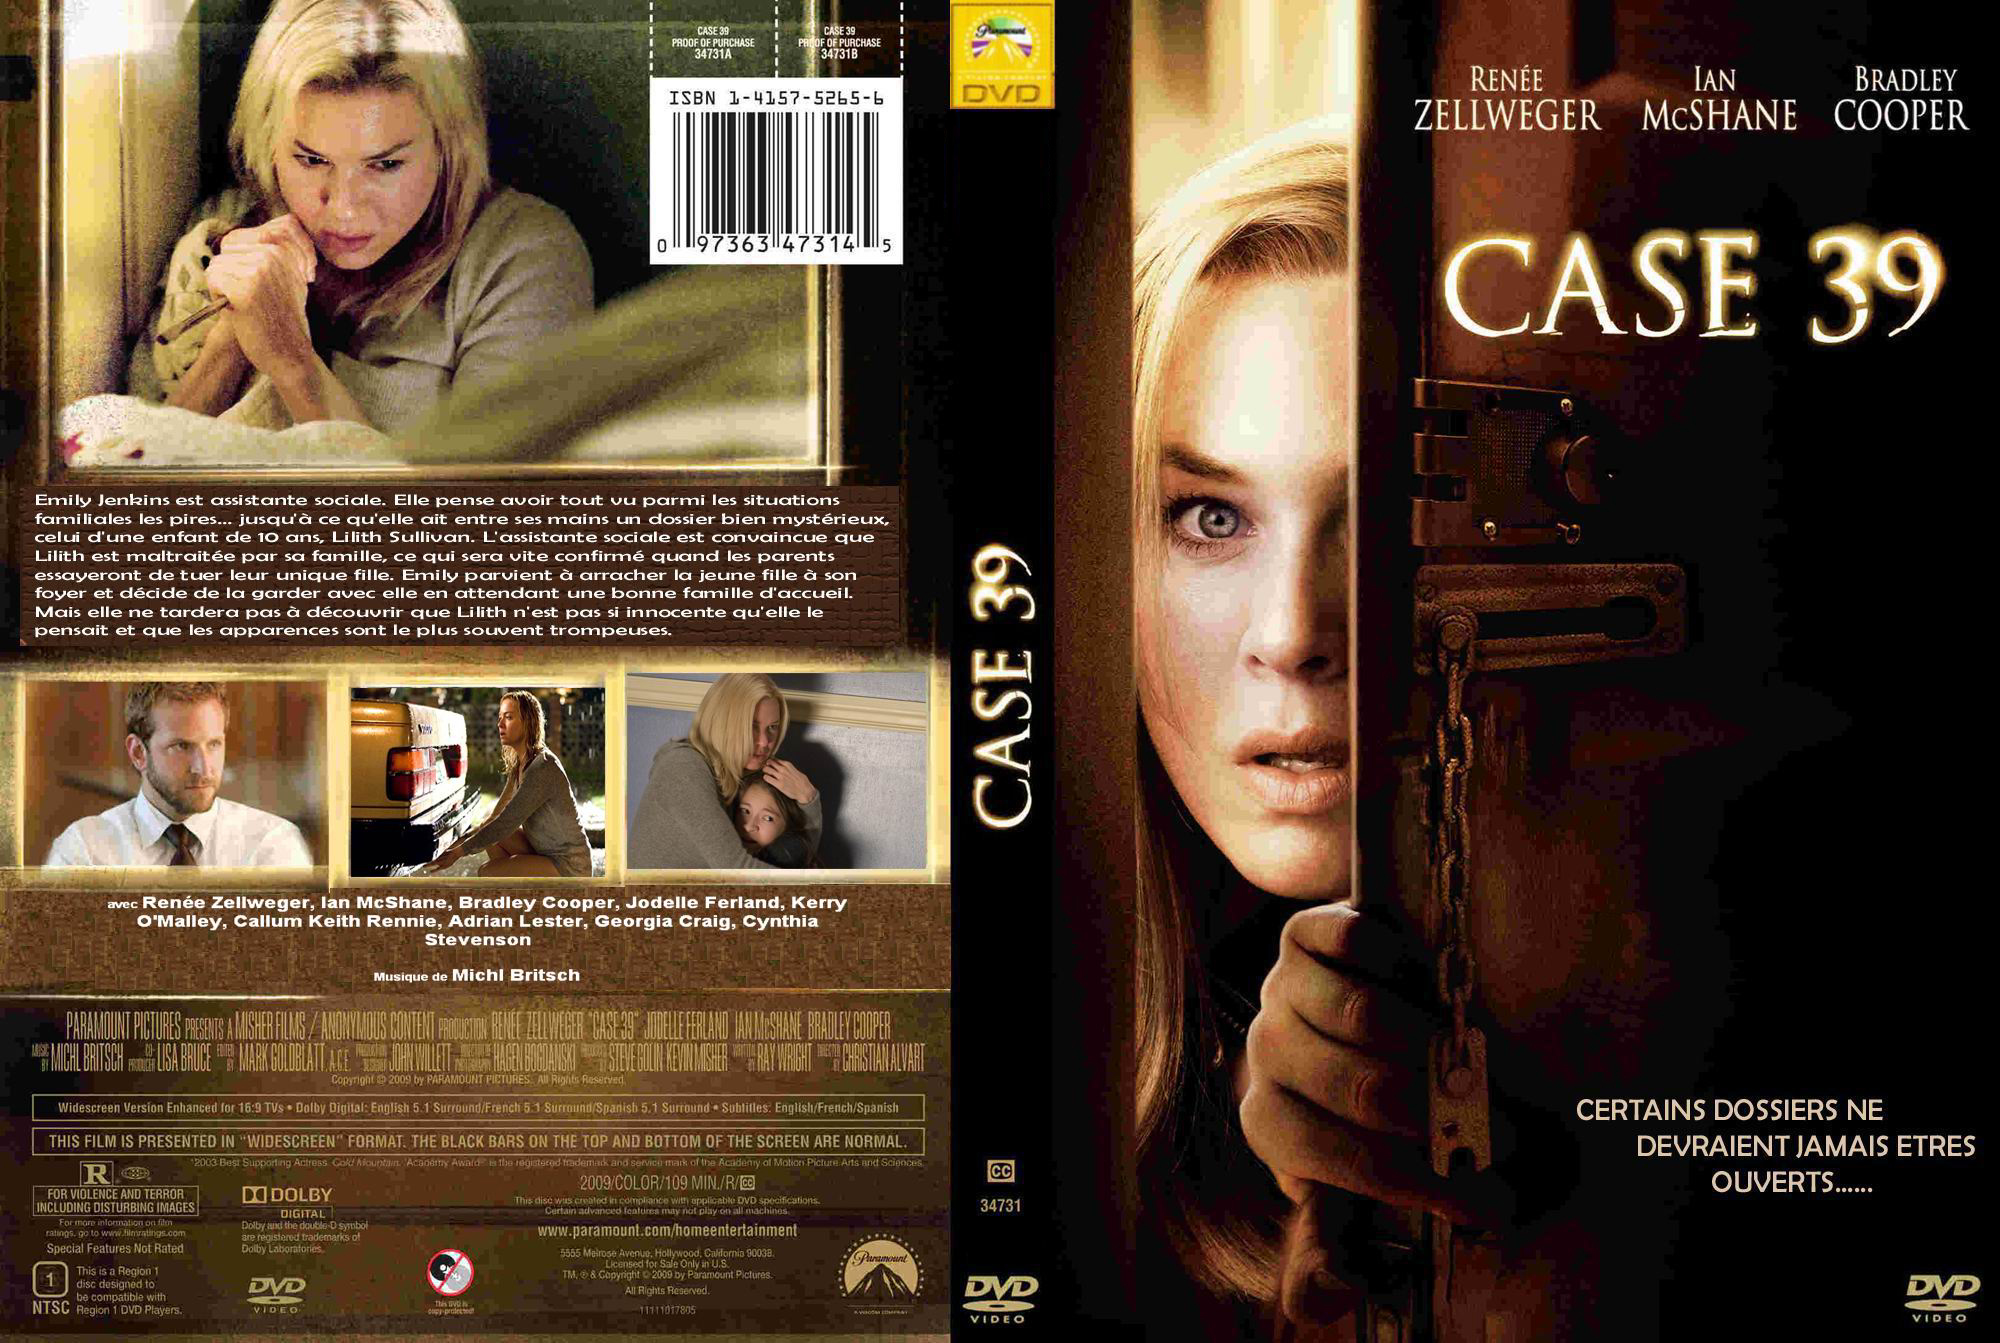 Jaquette DVD Case 39 custom